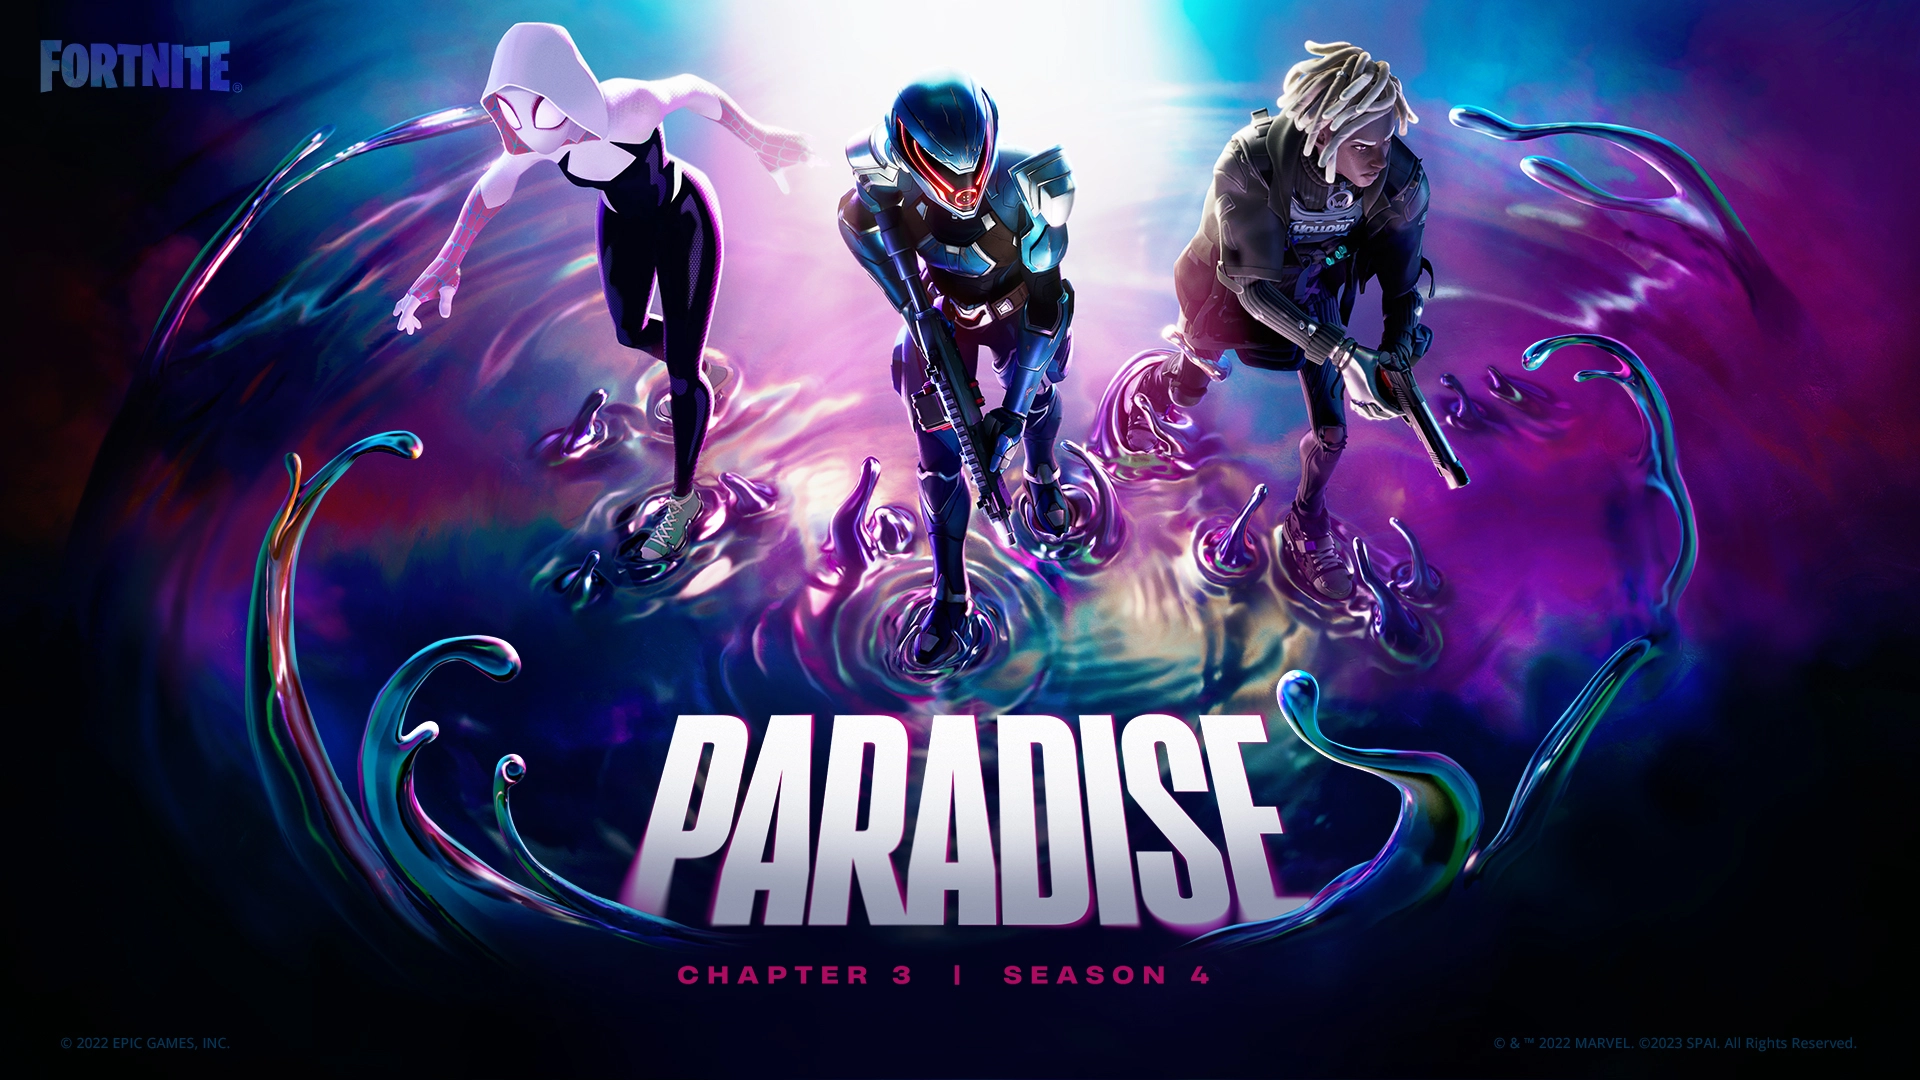 Video For Découvrez les nouveautés de Fortnite Chapitre 3, Saison 4 : Paradis